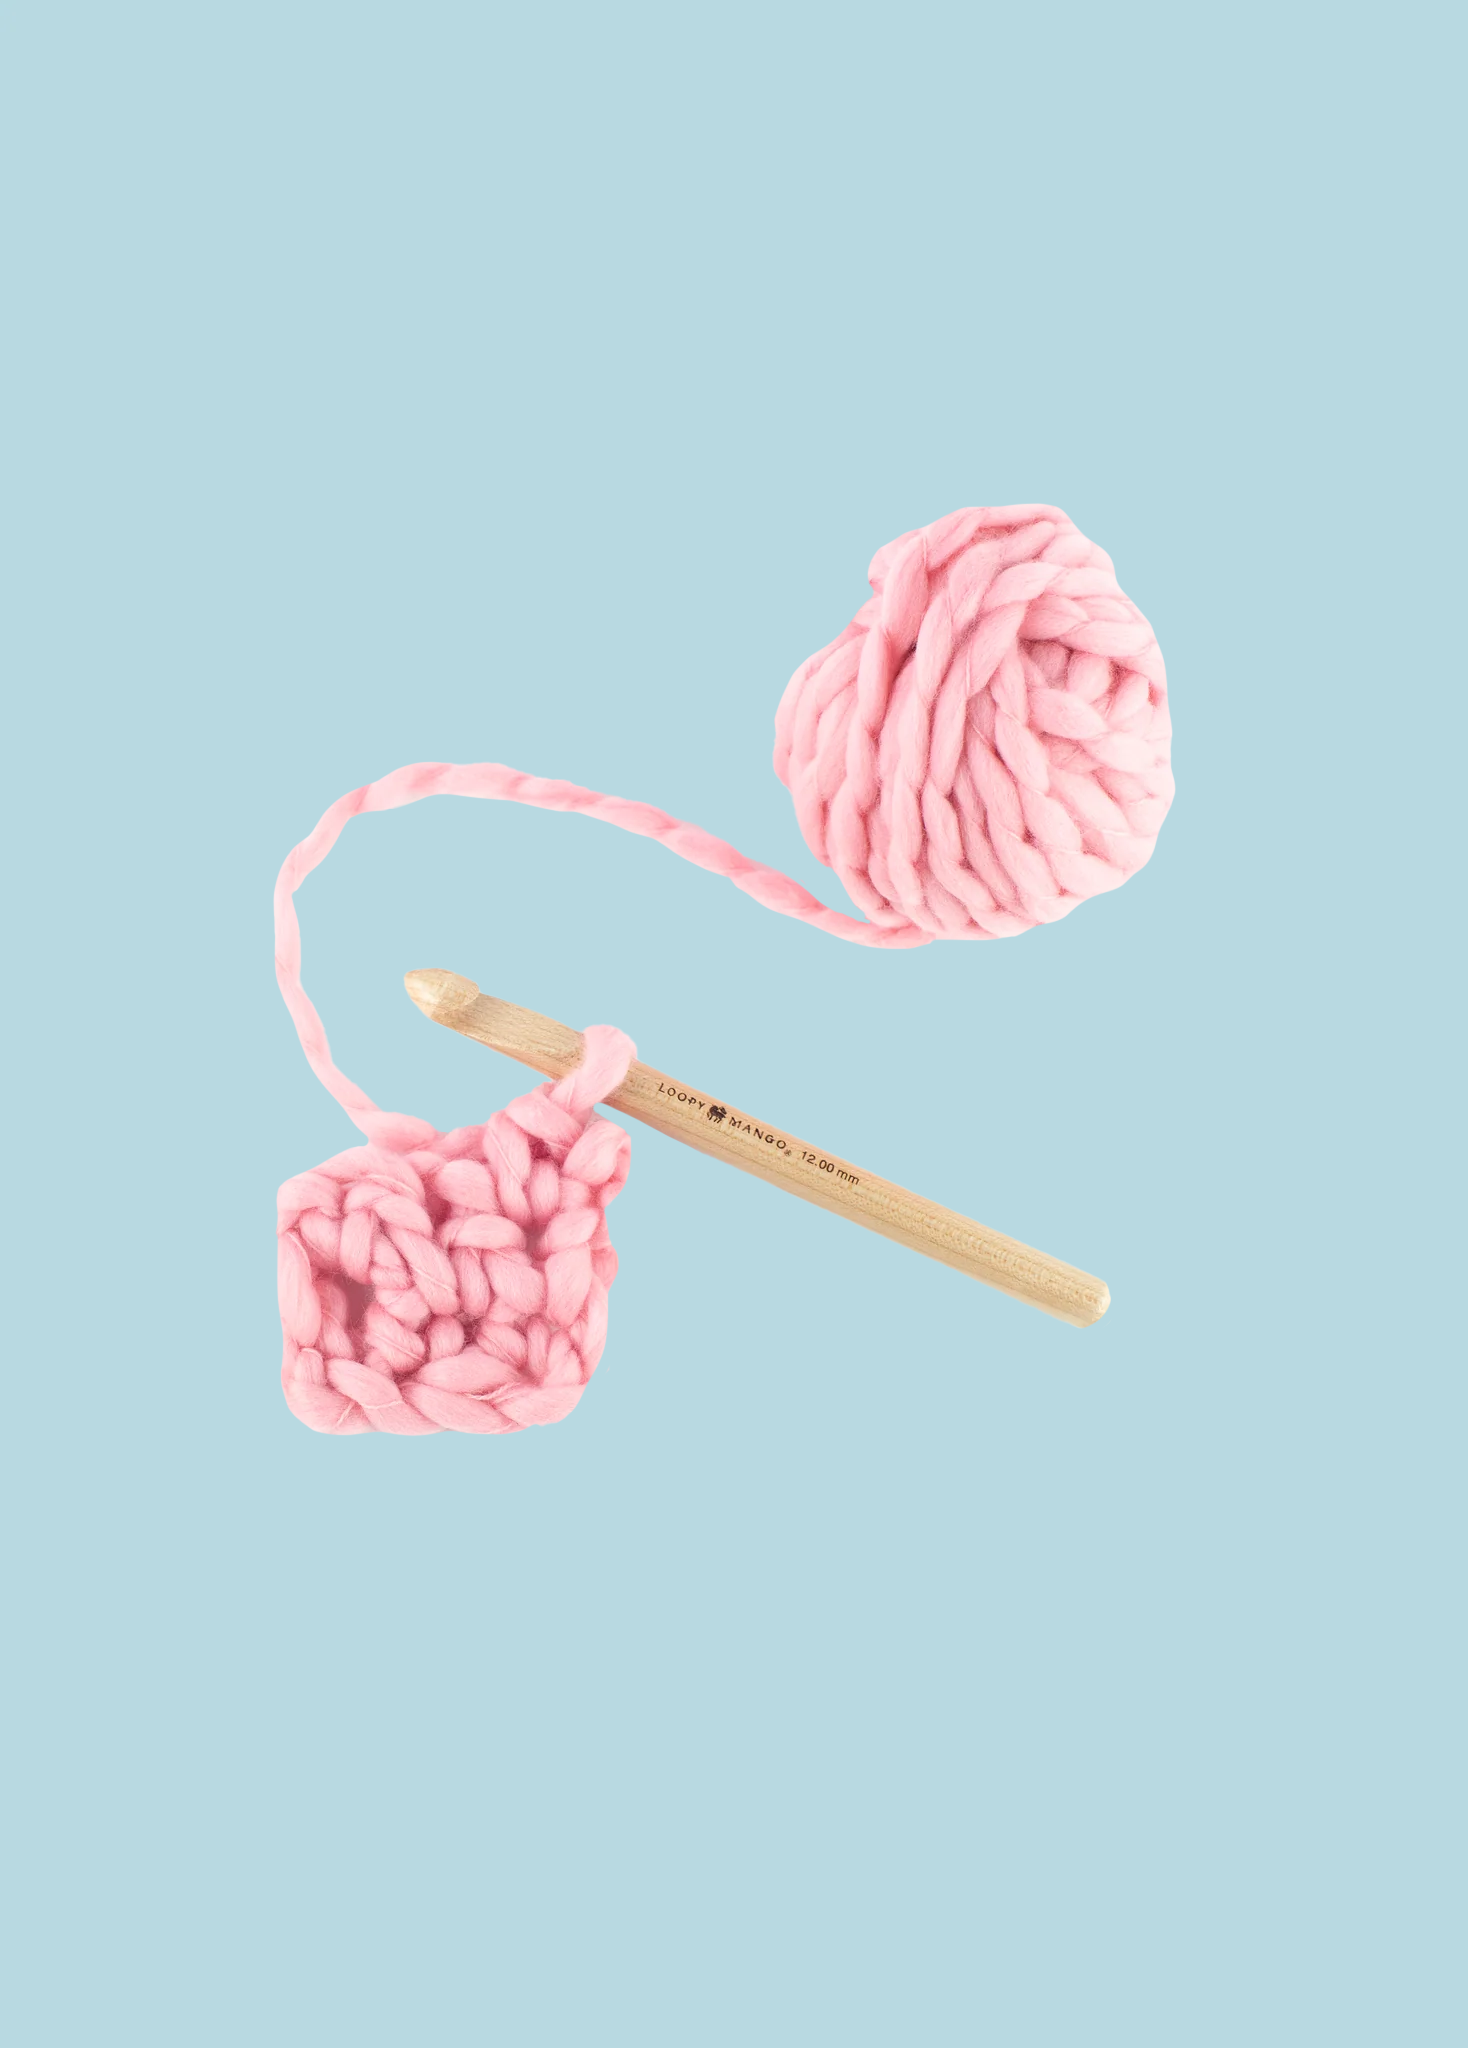 SALE-50% OFF 15 mm or 19 mm Crochet Hook – Loopy Mango